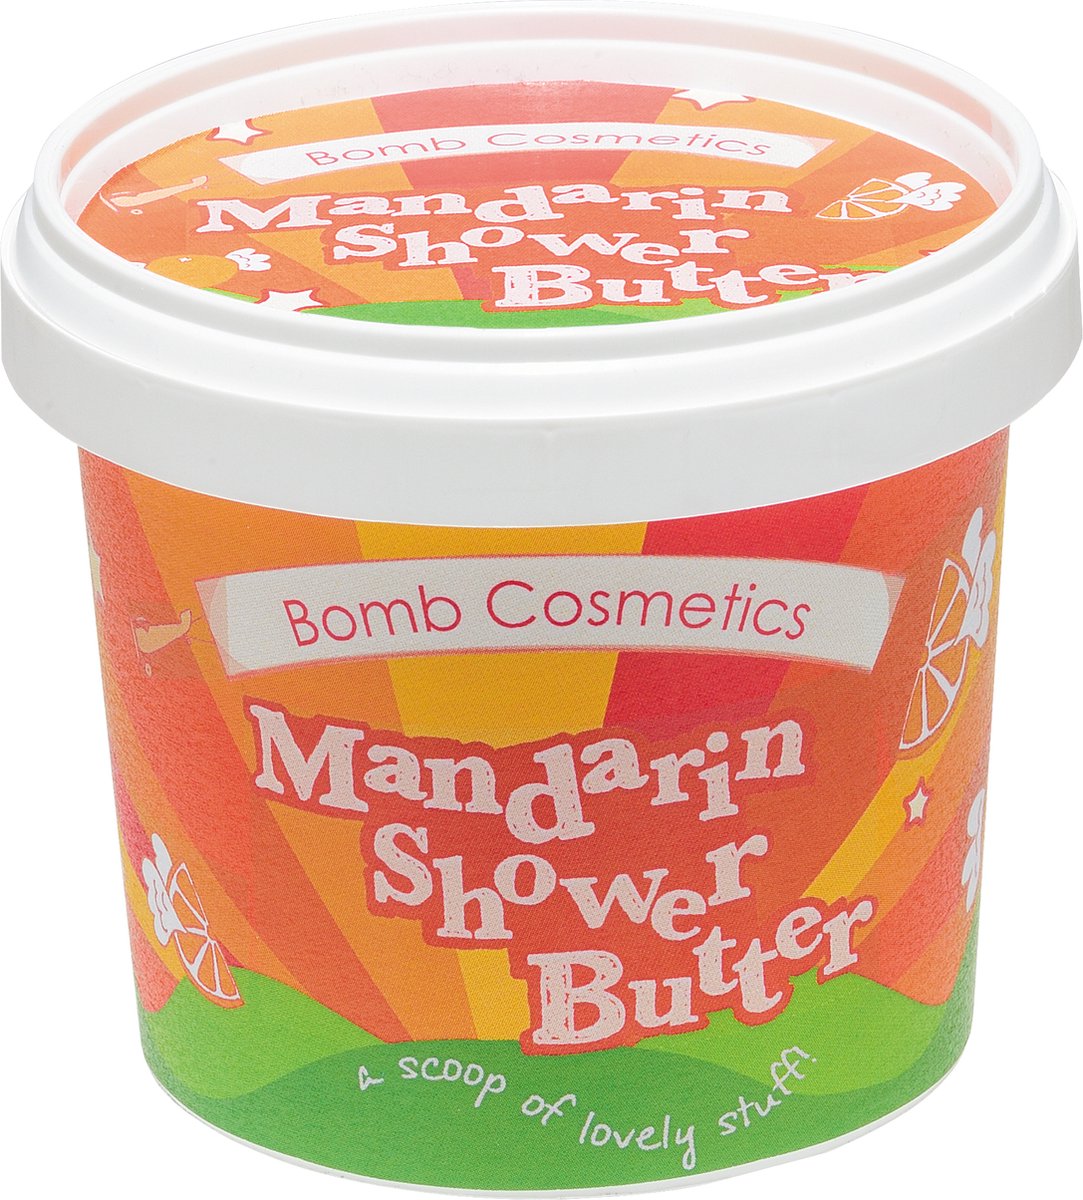 Bomb Cosmetics Shower Butter Mandarin